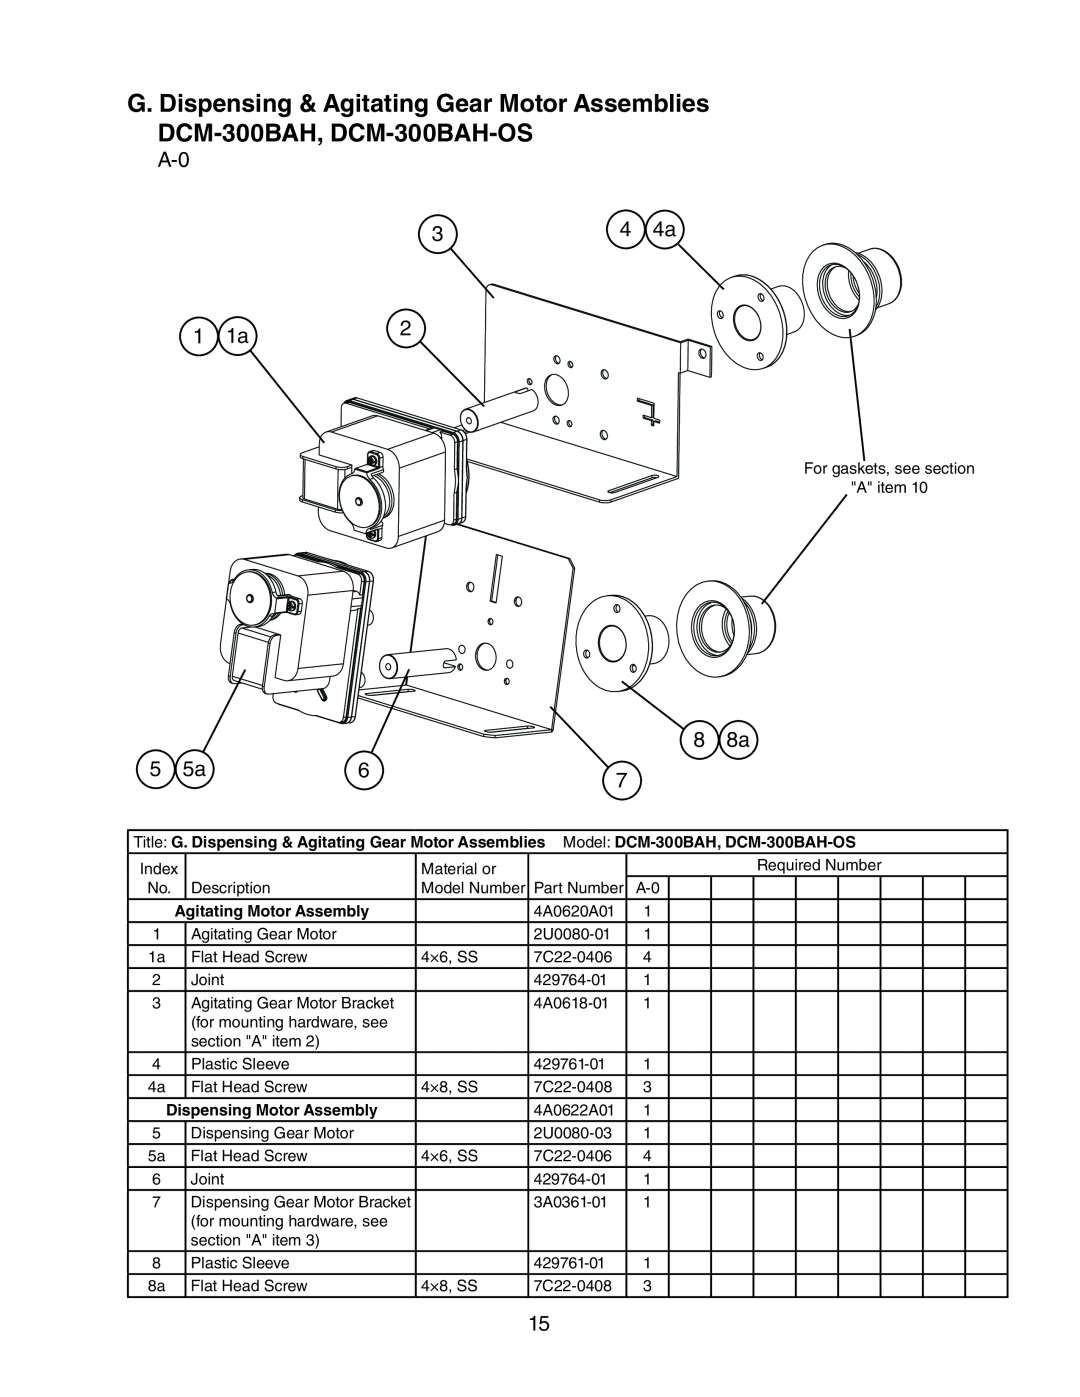 Hoshizaki manual G. Dispensing & Agitating Gear Motor Assemblies, DCM-300BAH, DCM-300BAH-OS 